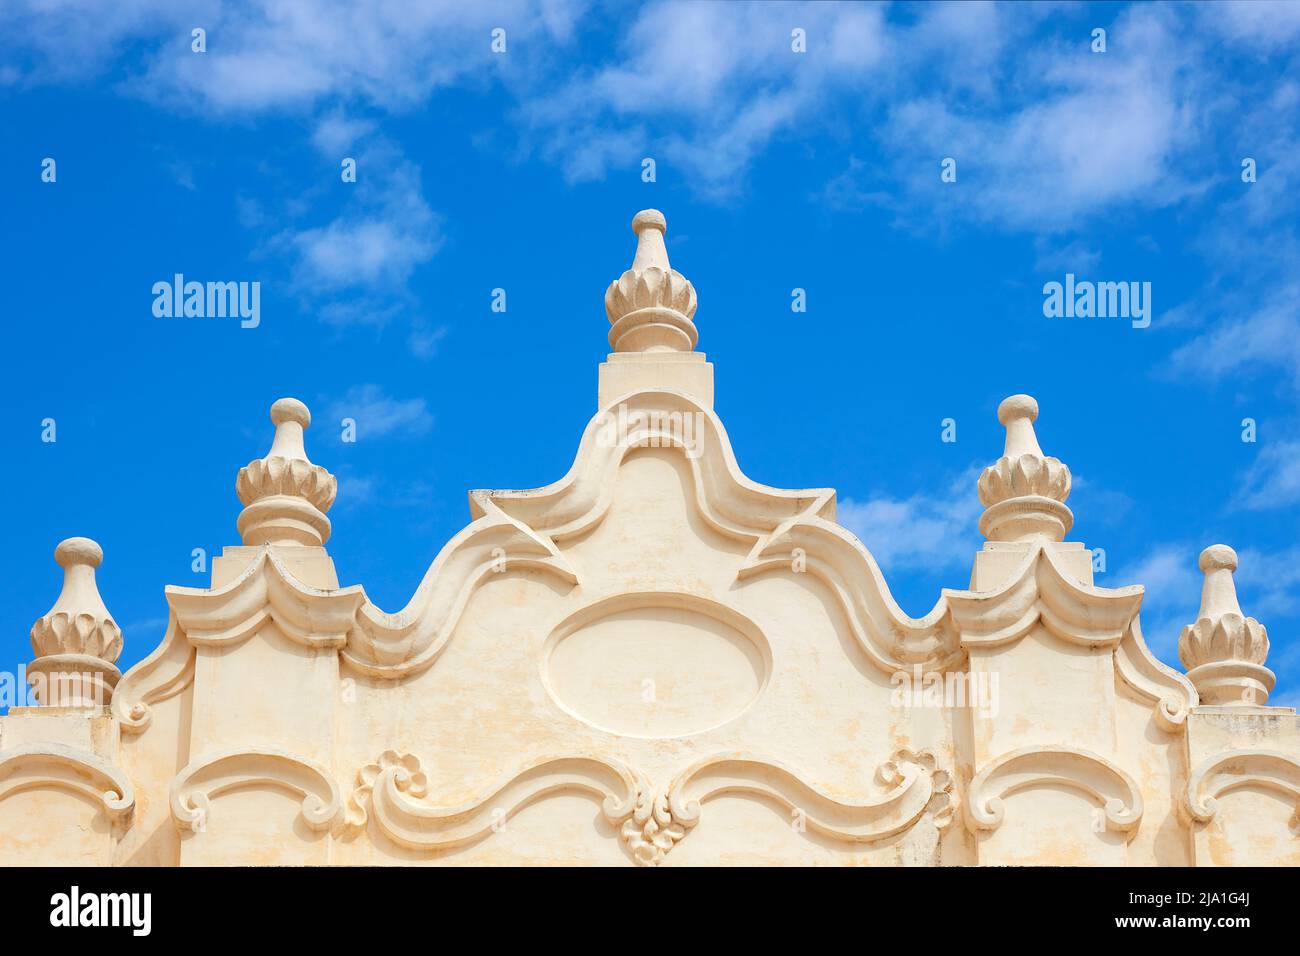 Ein Detail der Hauptfassade des Klosters San Bernardo im historischen Fass von Salta, Argentinien. Stockfoto